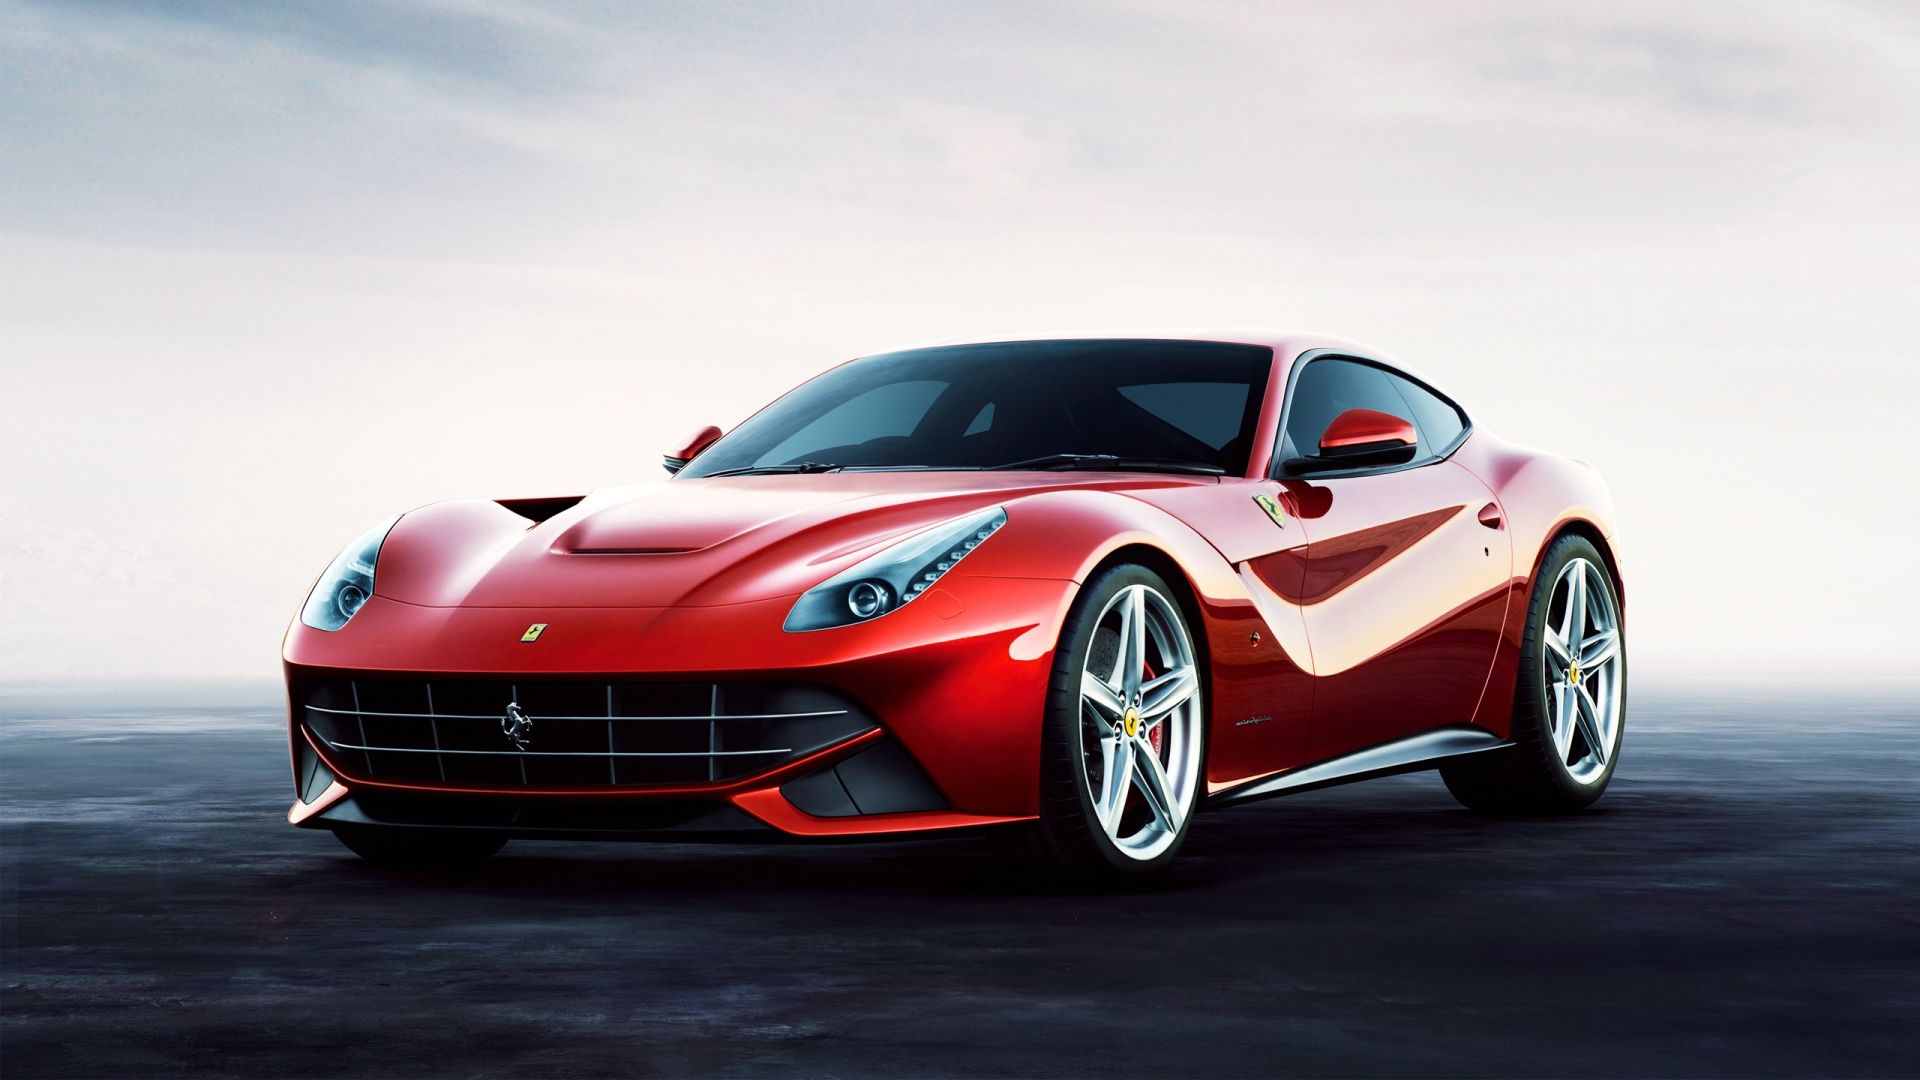 HD Red Ferrari fondos de pantalla y fotos | HD Cars Wallpapers